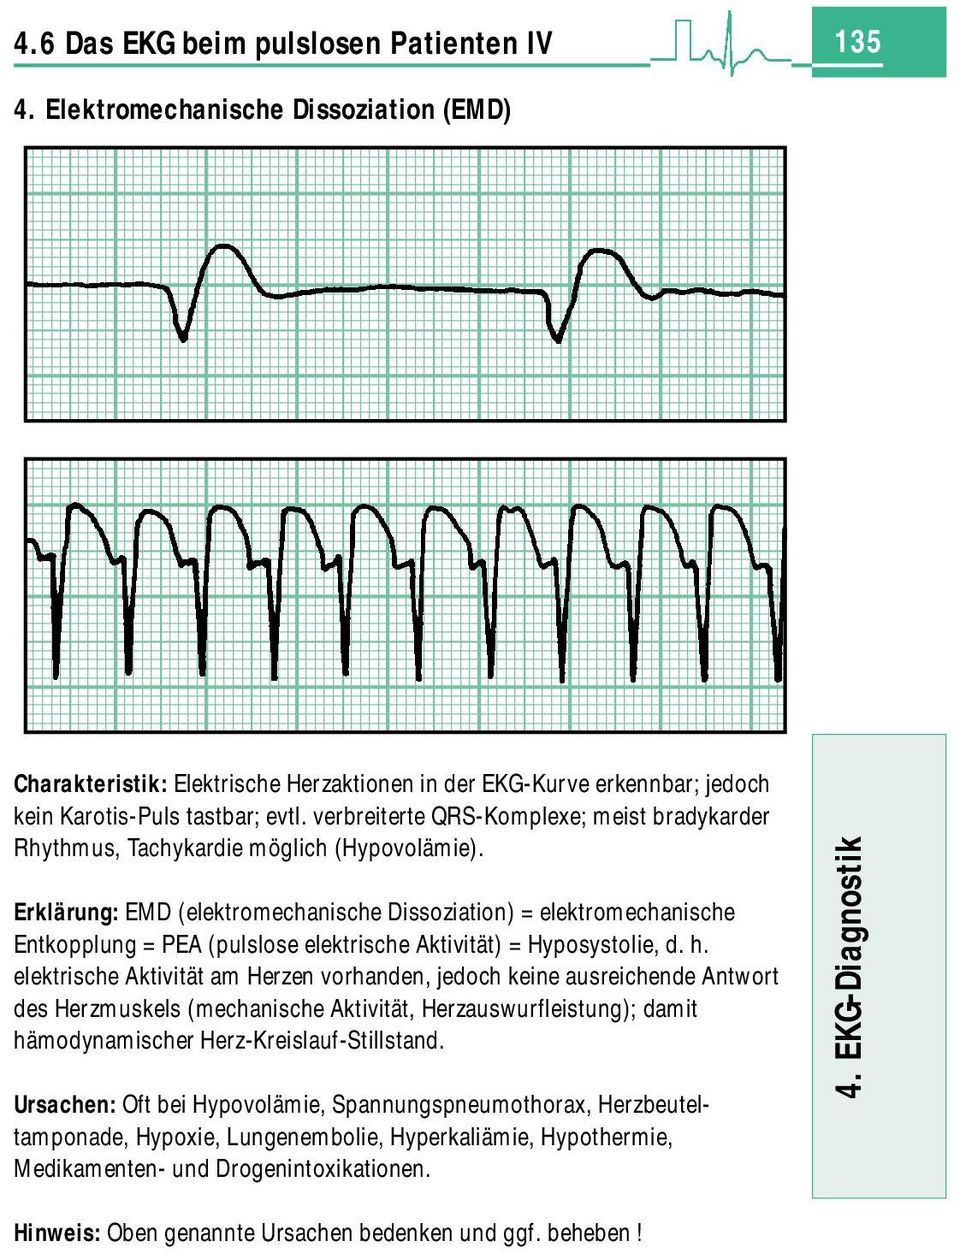 Erklärung: EMD (elektromechanische Dissoziation) = elektromechanische Entkopplung = PEA (pulslose elektrische Aktivität) = Hyposystolie, d. h.